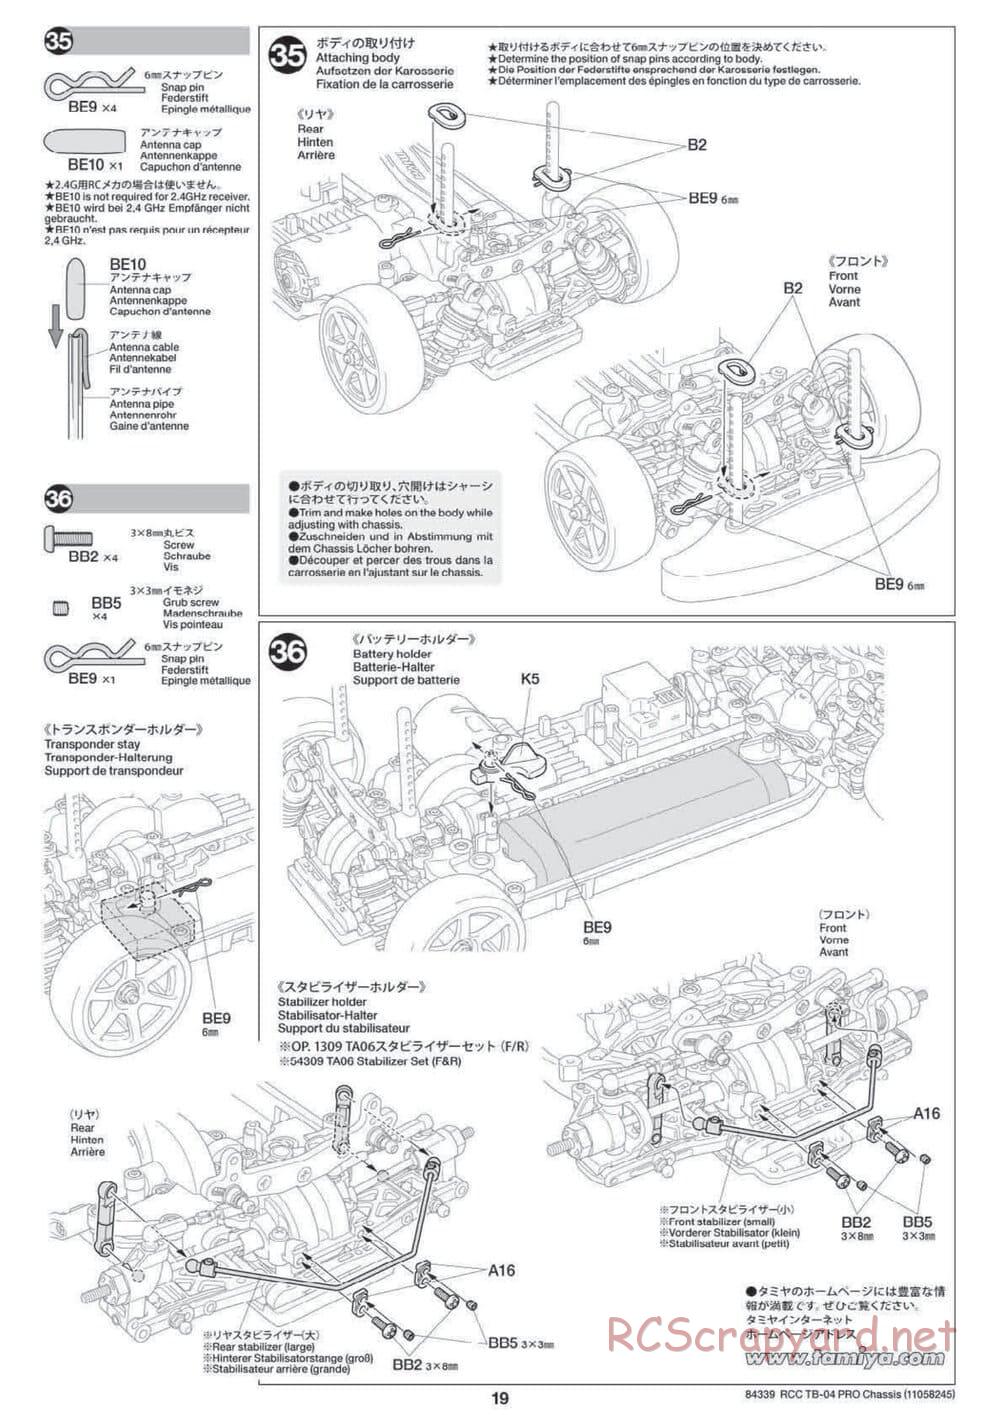 Tamiya - TB-04 Pro Chassis - Manual - Page 19